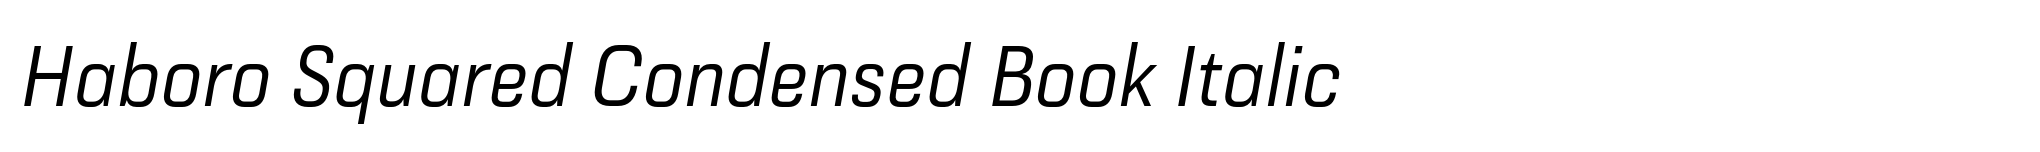 Haboro Squared Condensed Book Italic image